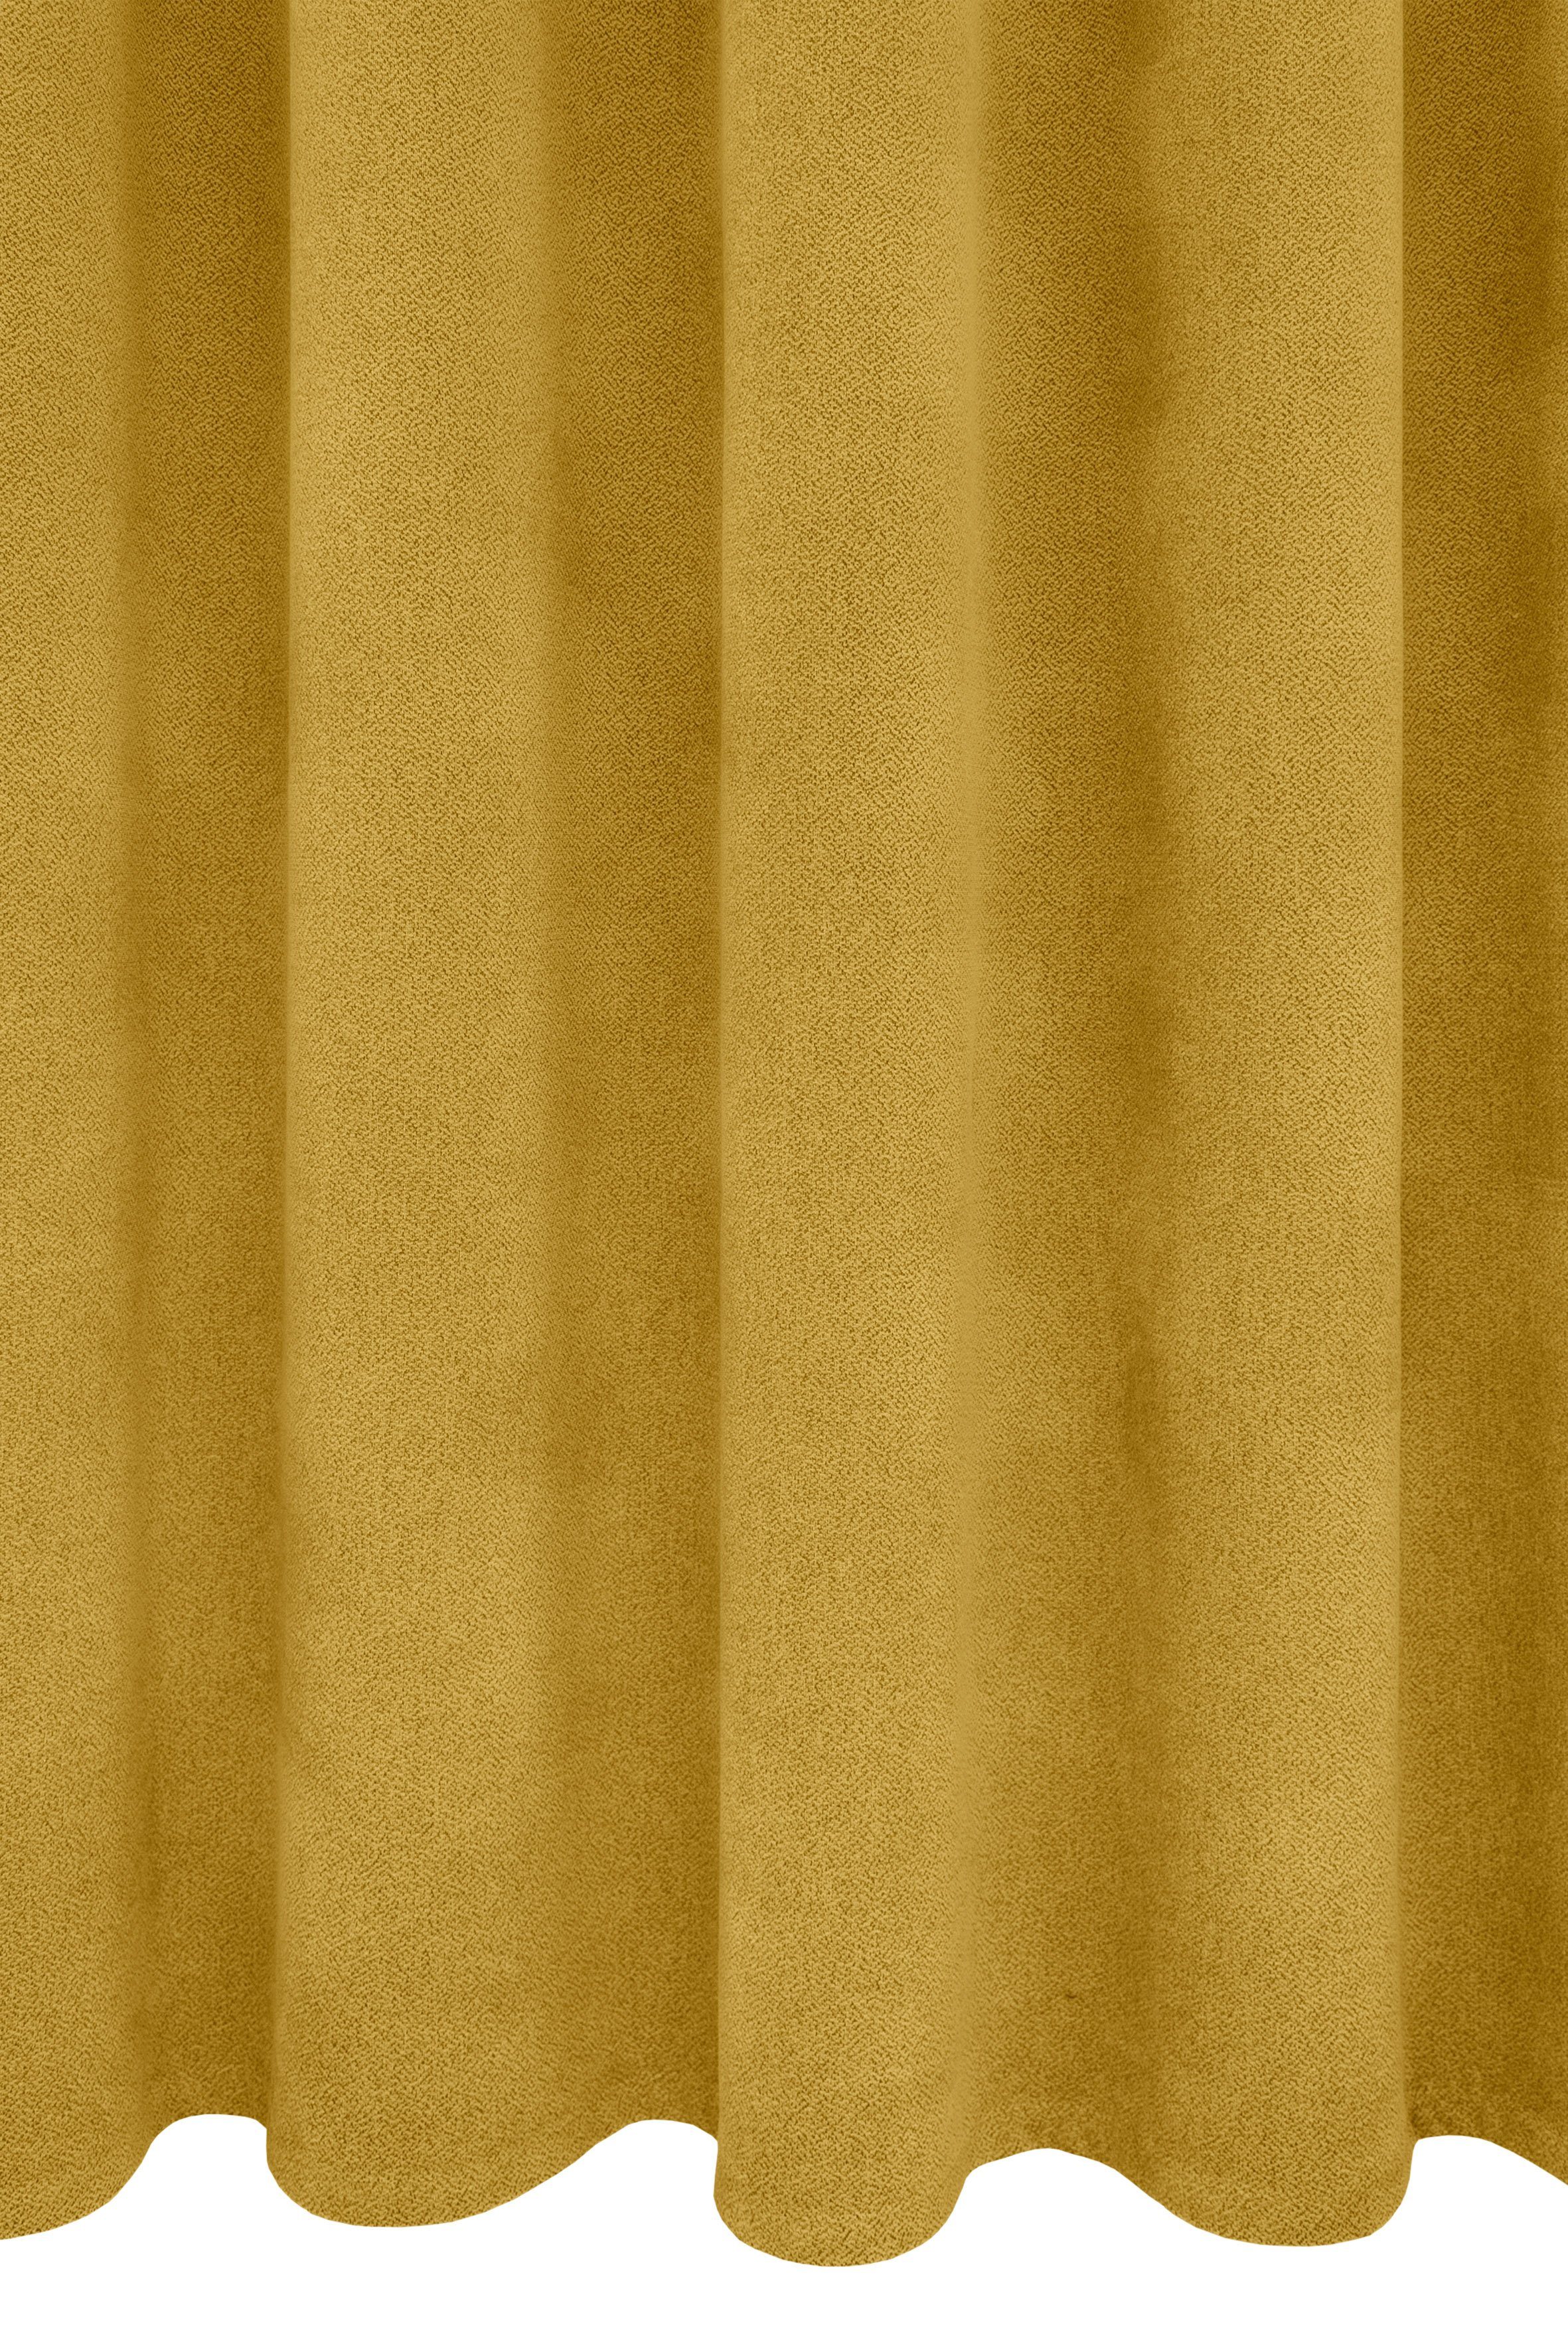 Polyester, Vorhang Alea, Ösen Kälteschutz, gelb sparend, Wärmeschutz, g/²m (1 verdunkelnd, einfarbig, Energie 145cm, 415 Breite VHG, St),